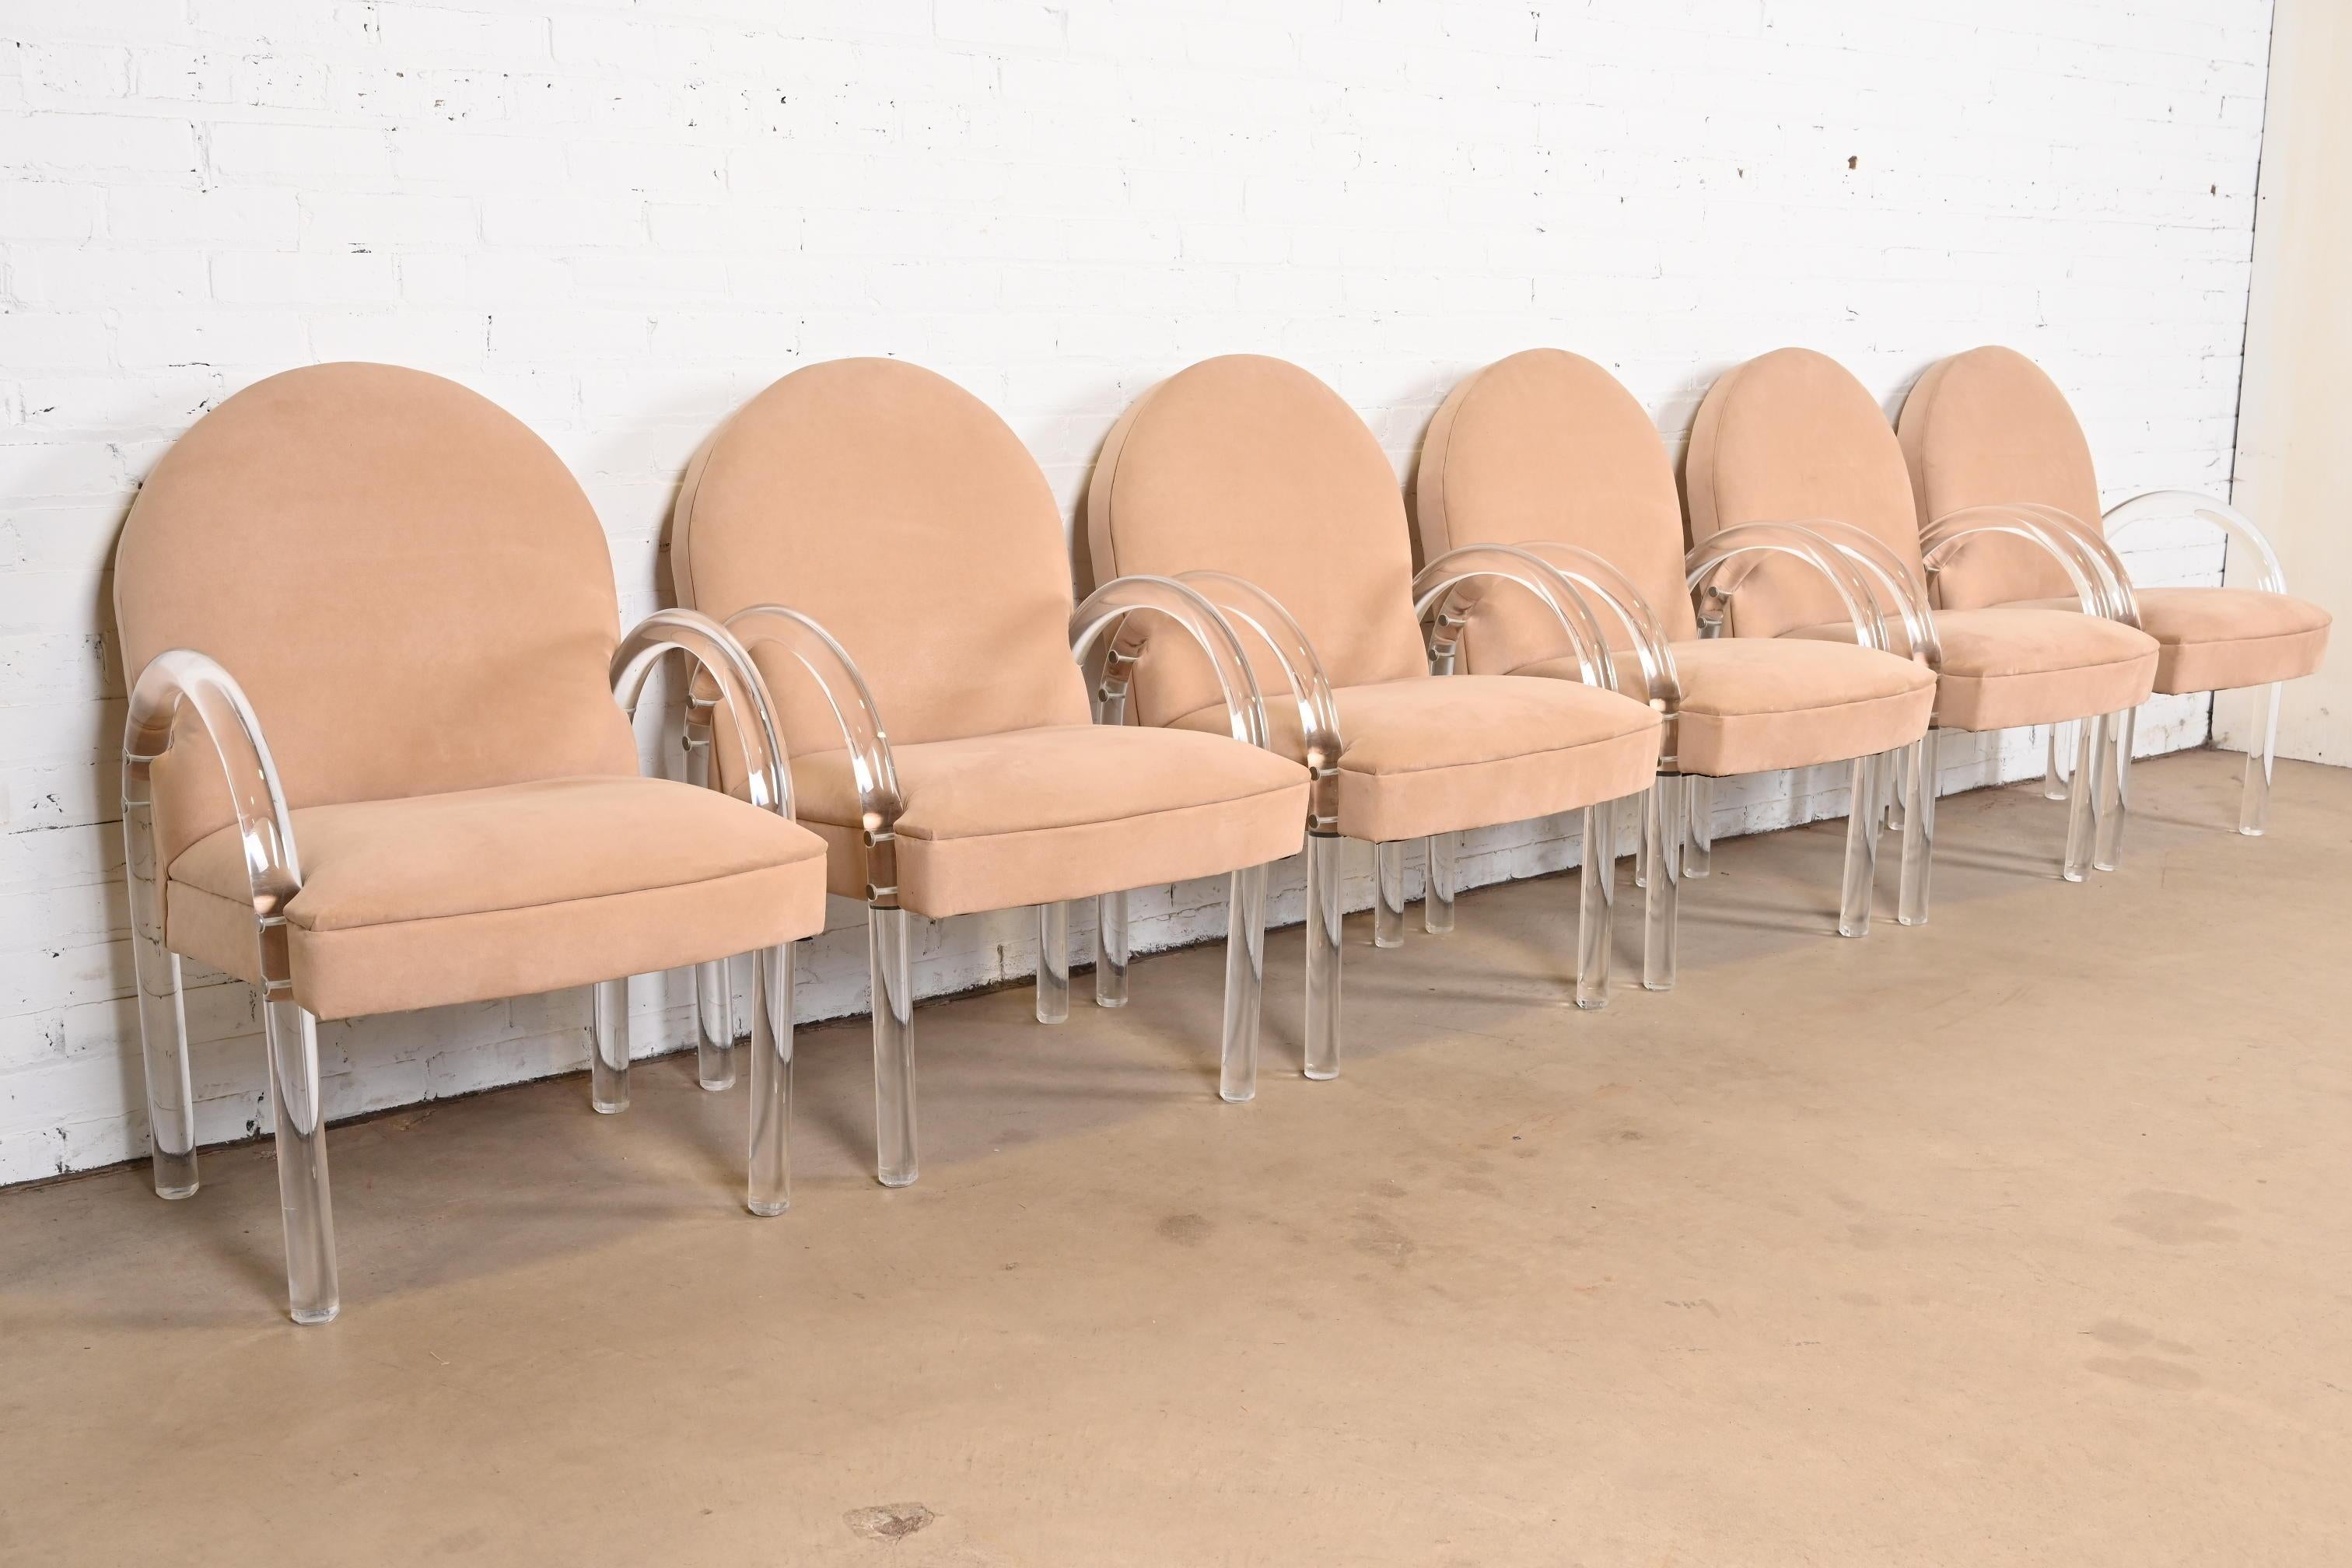 Magnifique ensemble de six fauteuils, chaises club ou chaises longues en lucite de style Art déco moderne ou du milieu du siècle.

Par Leon Rosen pour la Collectional

États-Unis, années 1970

Cadre sculptural en lucite et revêtement en daim